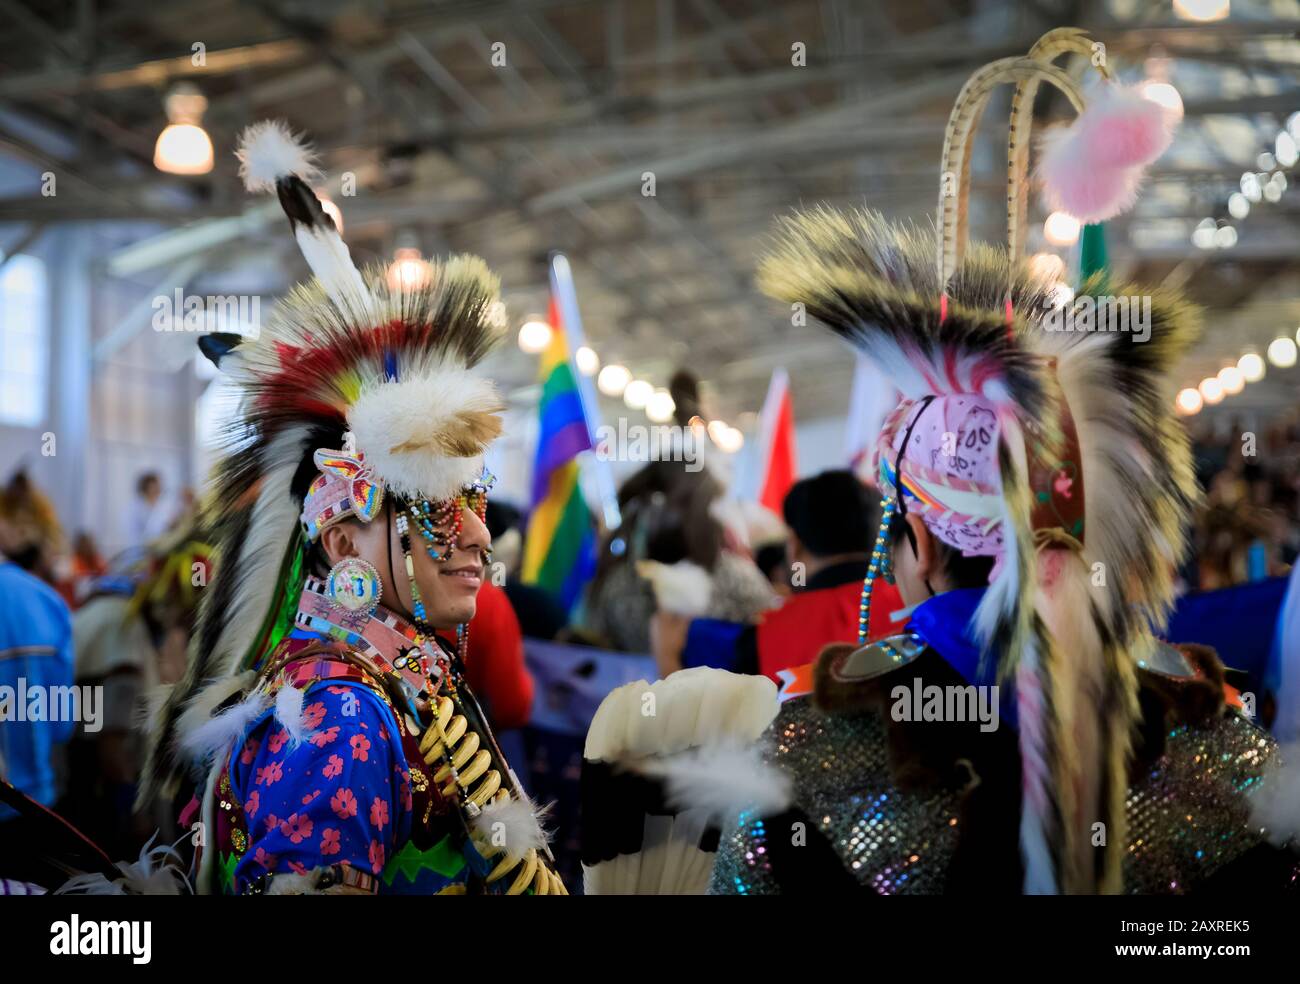 San Francisco, États-Unis - 08 février 2020: Les Indiens d'Amérique autochtones portent des cafards à porc-épic complexes et des tenues traditionnelles dansant à un powwow Banque D'Images